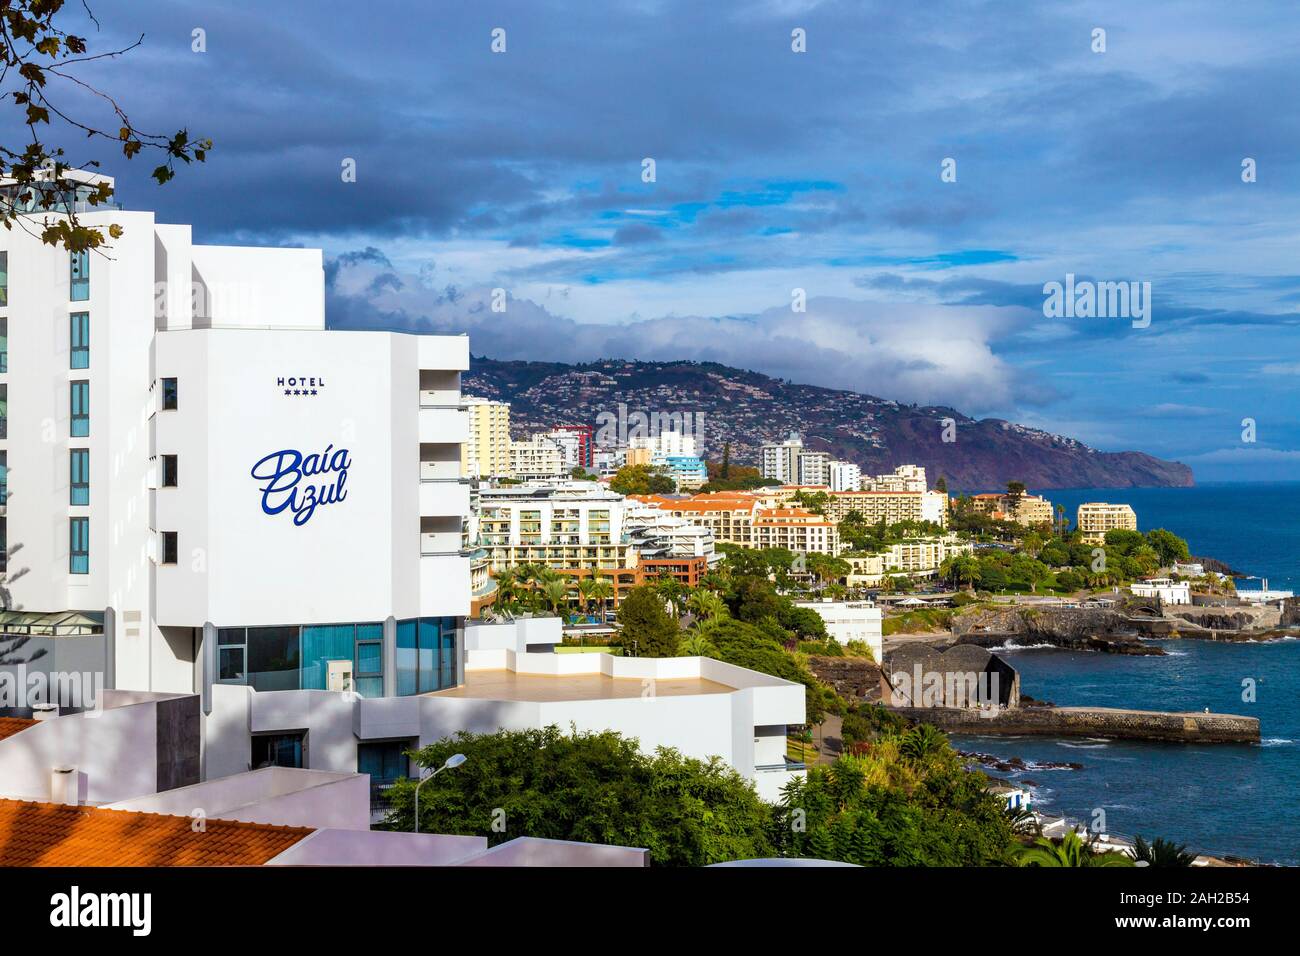 Hotel Baía Azul et stations balnéaires le long de la côte à Funchal, Madère, Portugal Banque D'Images